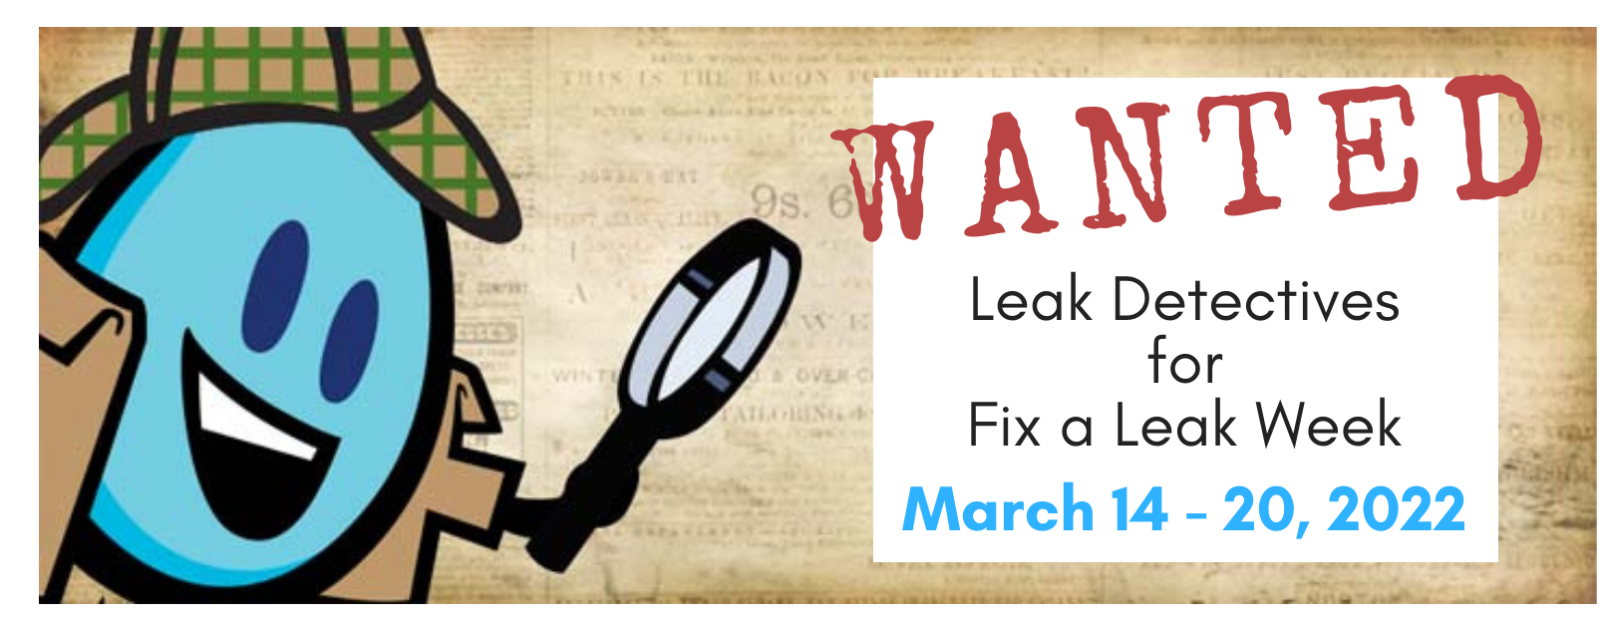 Fix a Leak Week, March 14-20